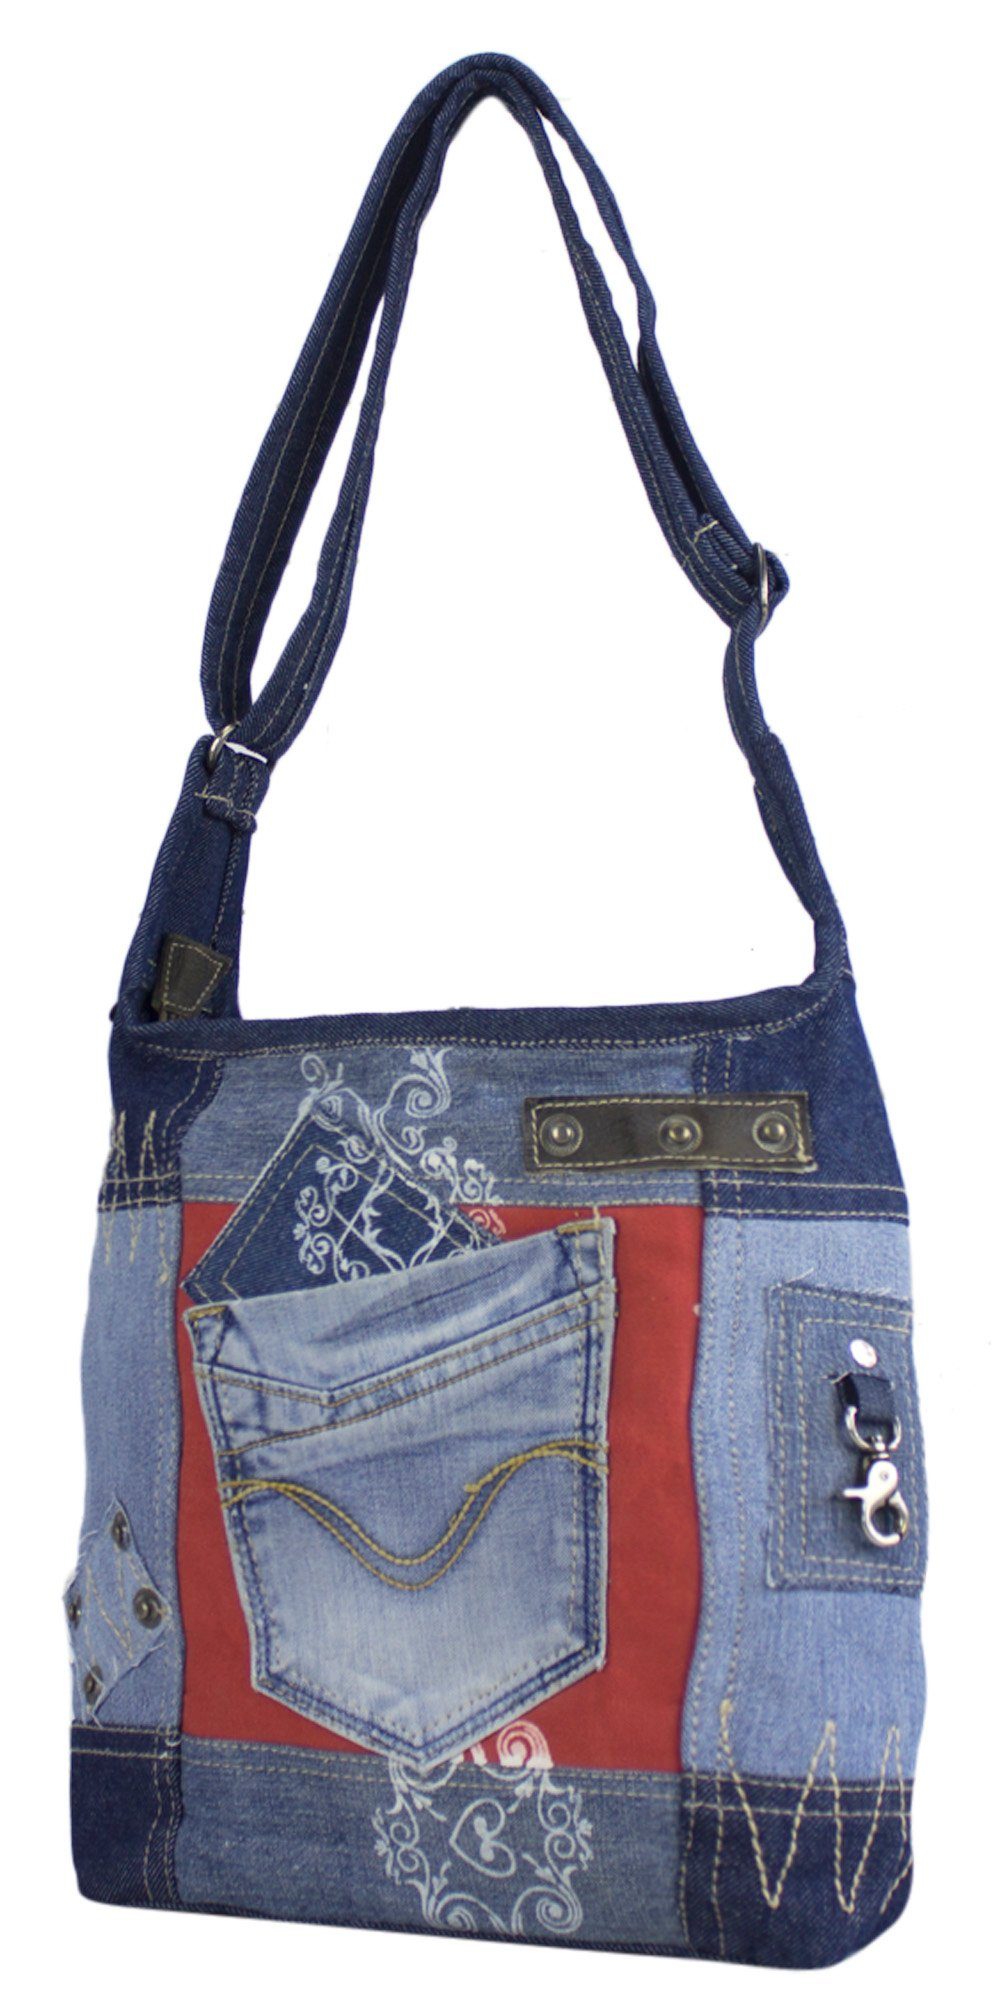 in Jeans Vintage Schultertasche recycelten Hobo Canvas. recycelte Materialien Rote Tasche Umhängetasche und aus design., Retro Sunsa Aus